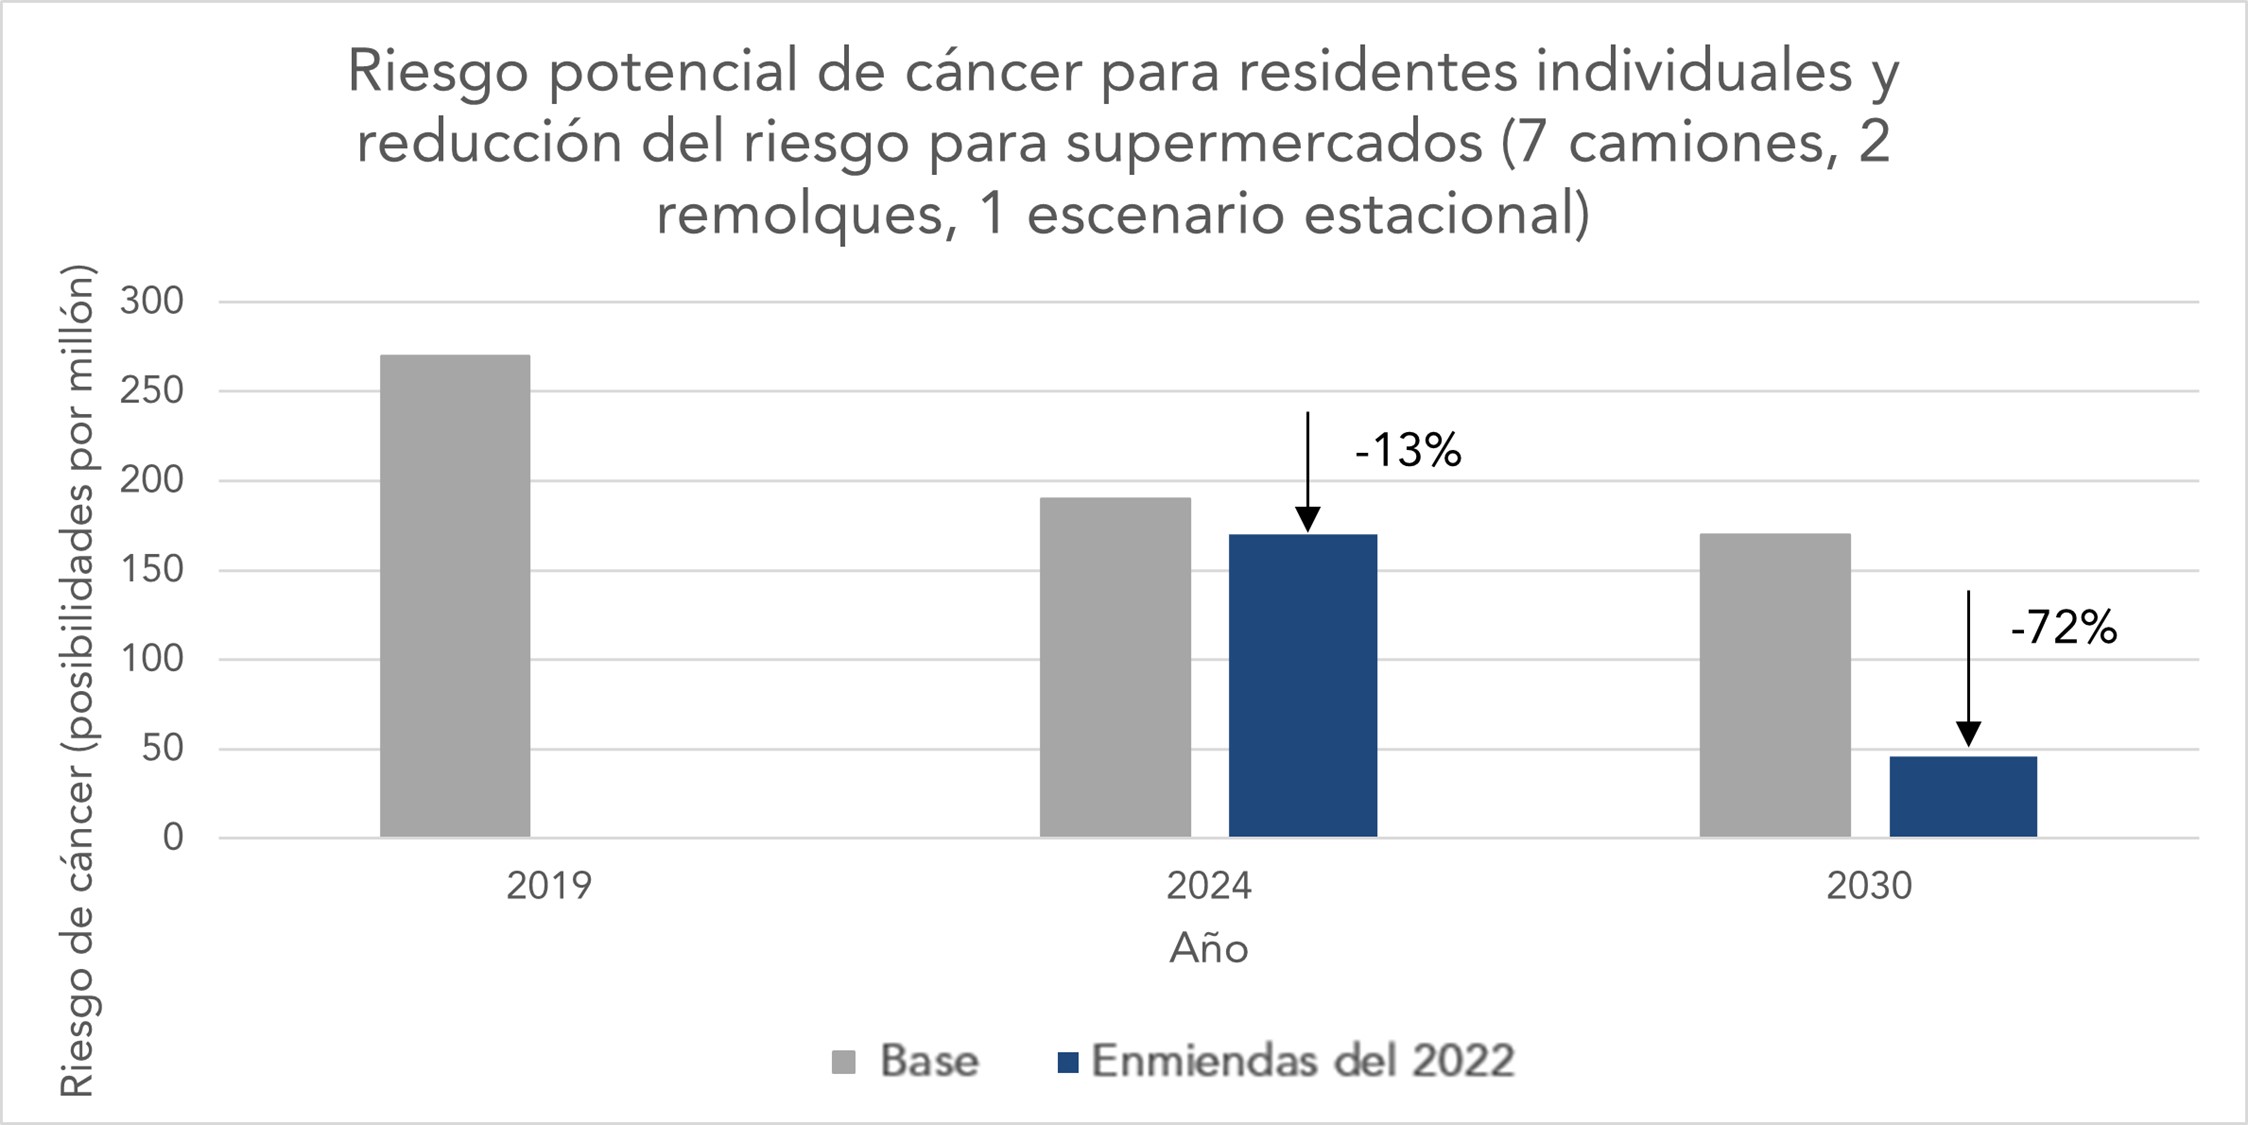 Riesgo potencial de cáncer para residentes individuales y reducción de riesgo para supermercados (7 camiones, 2 remolques, 1 escenario estacional)